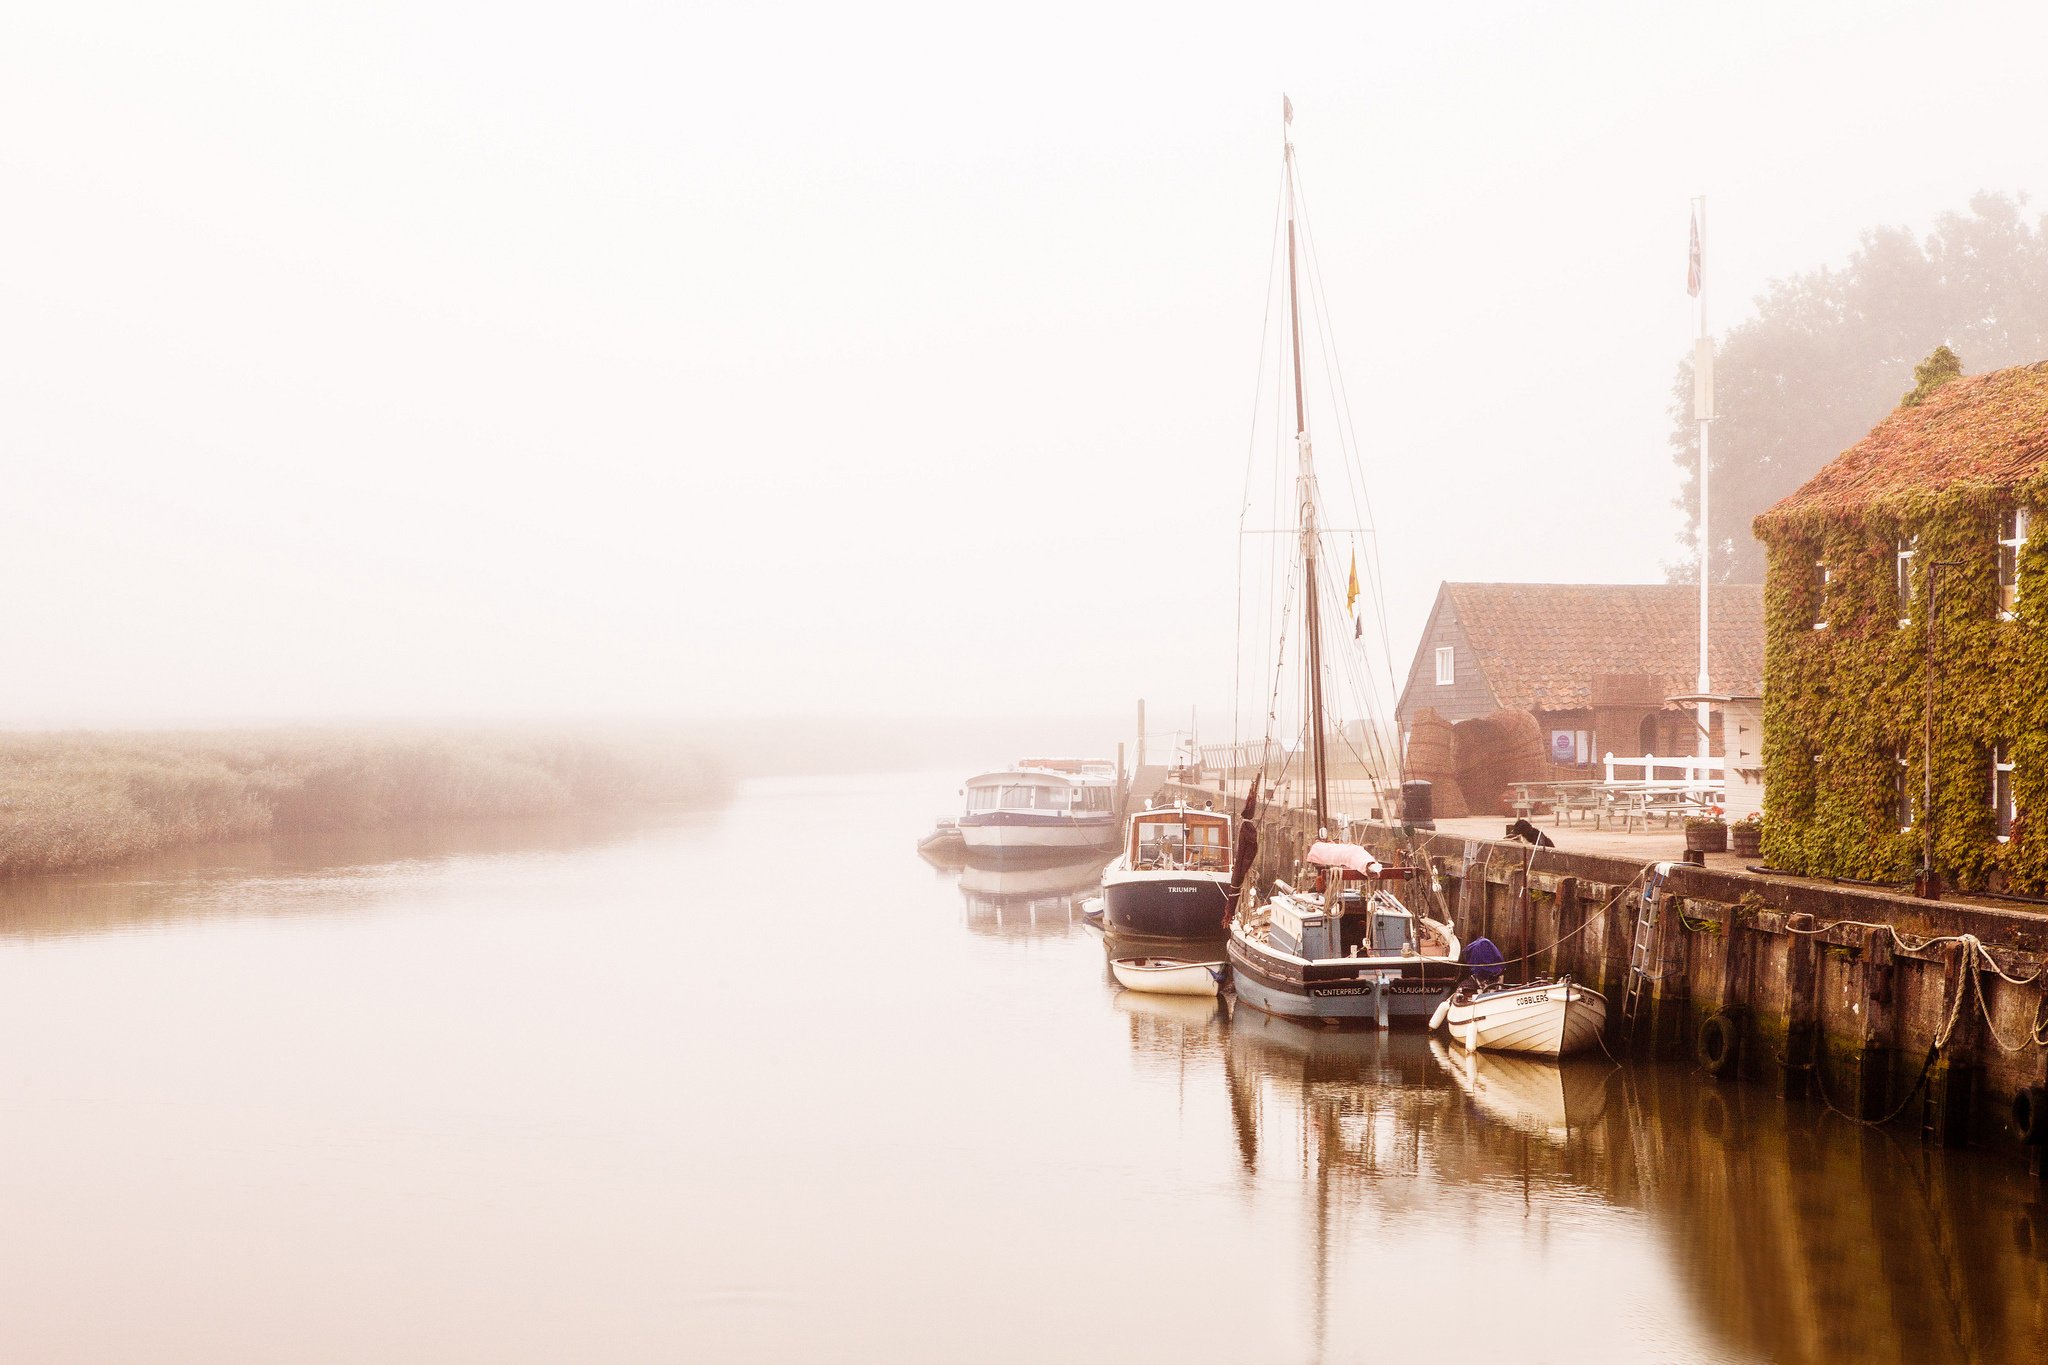 morning, Houses, Boat, Fog, Pier, River, Reflection Wallpaper